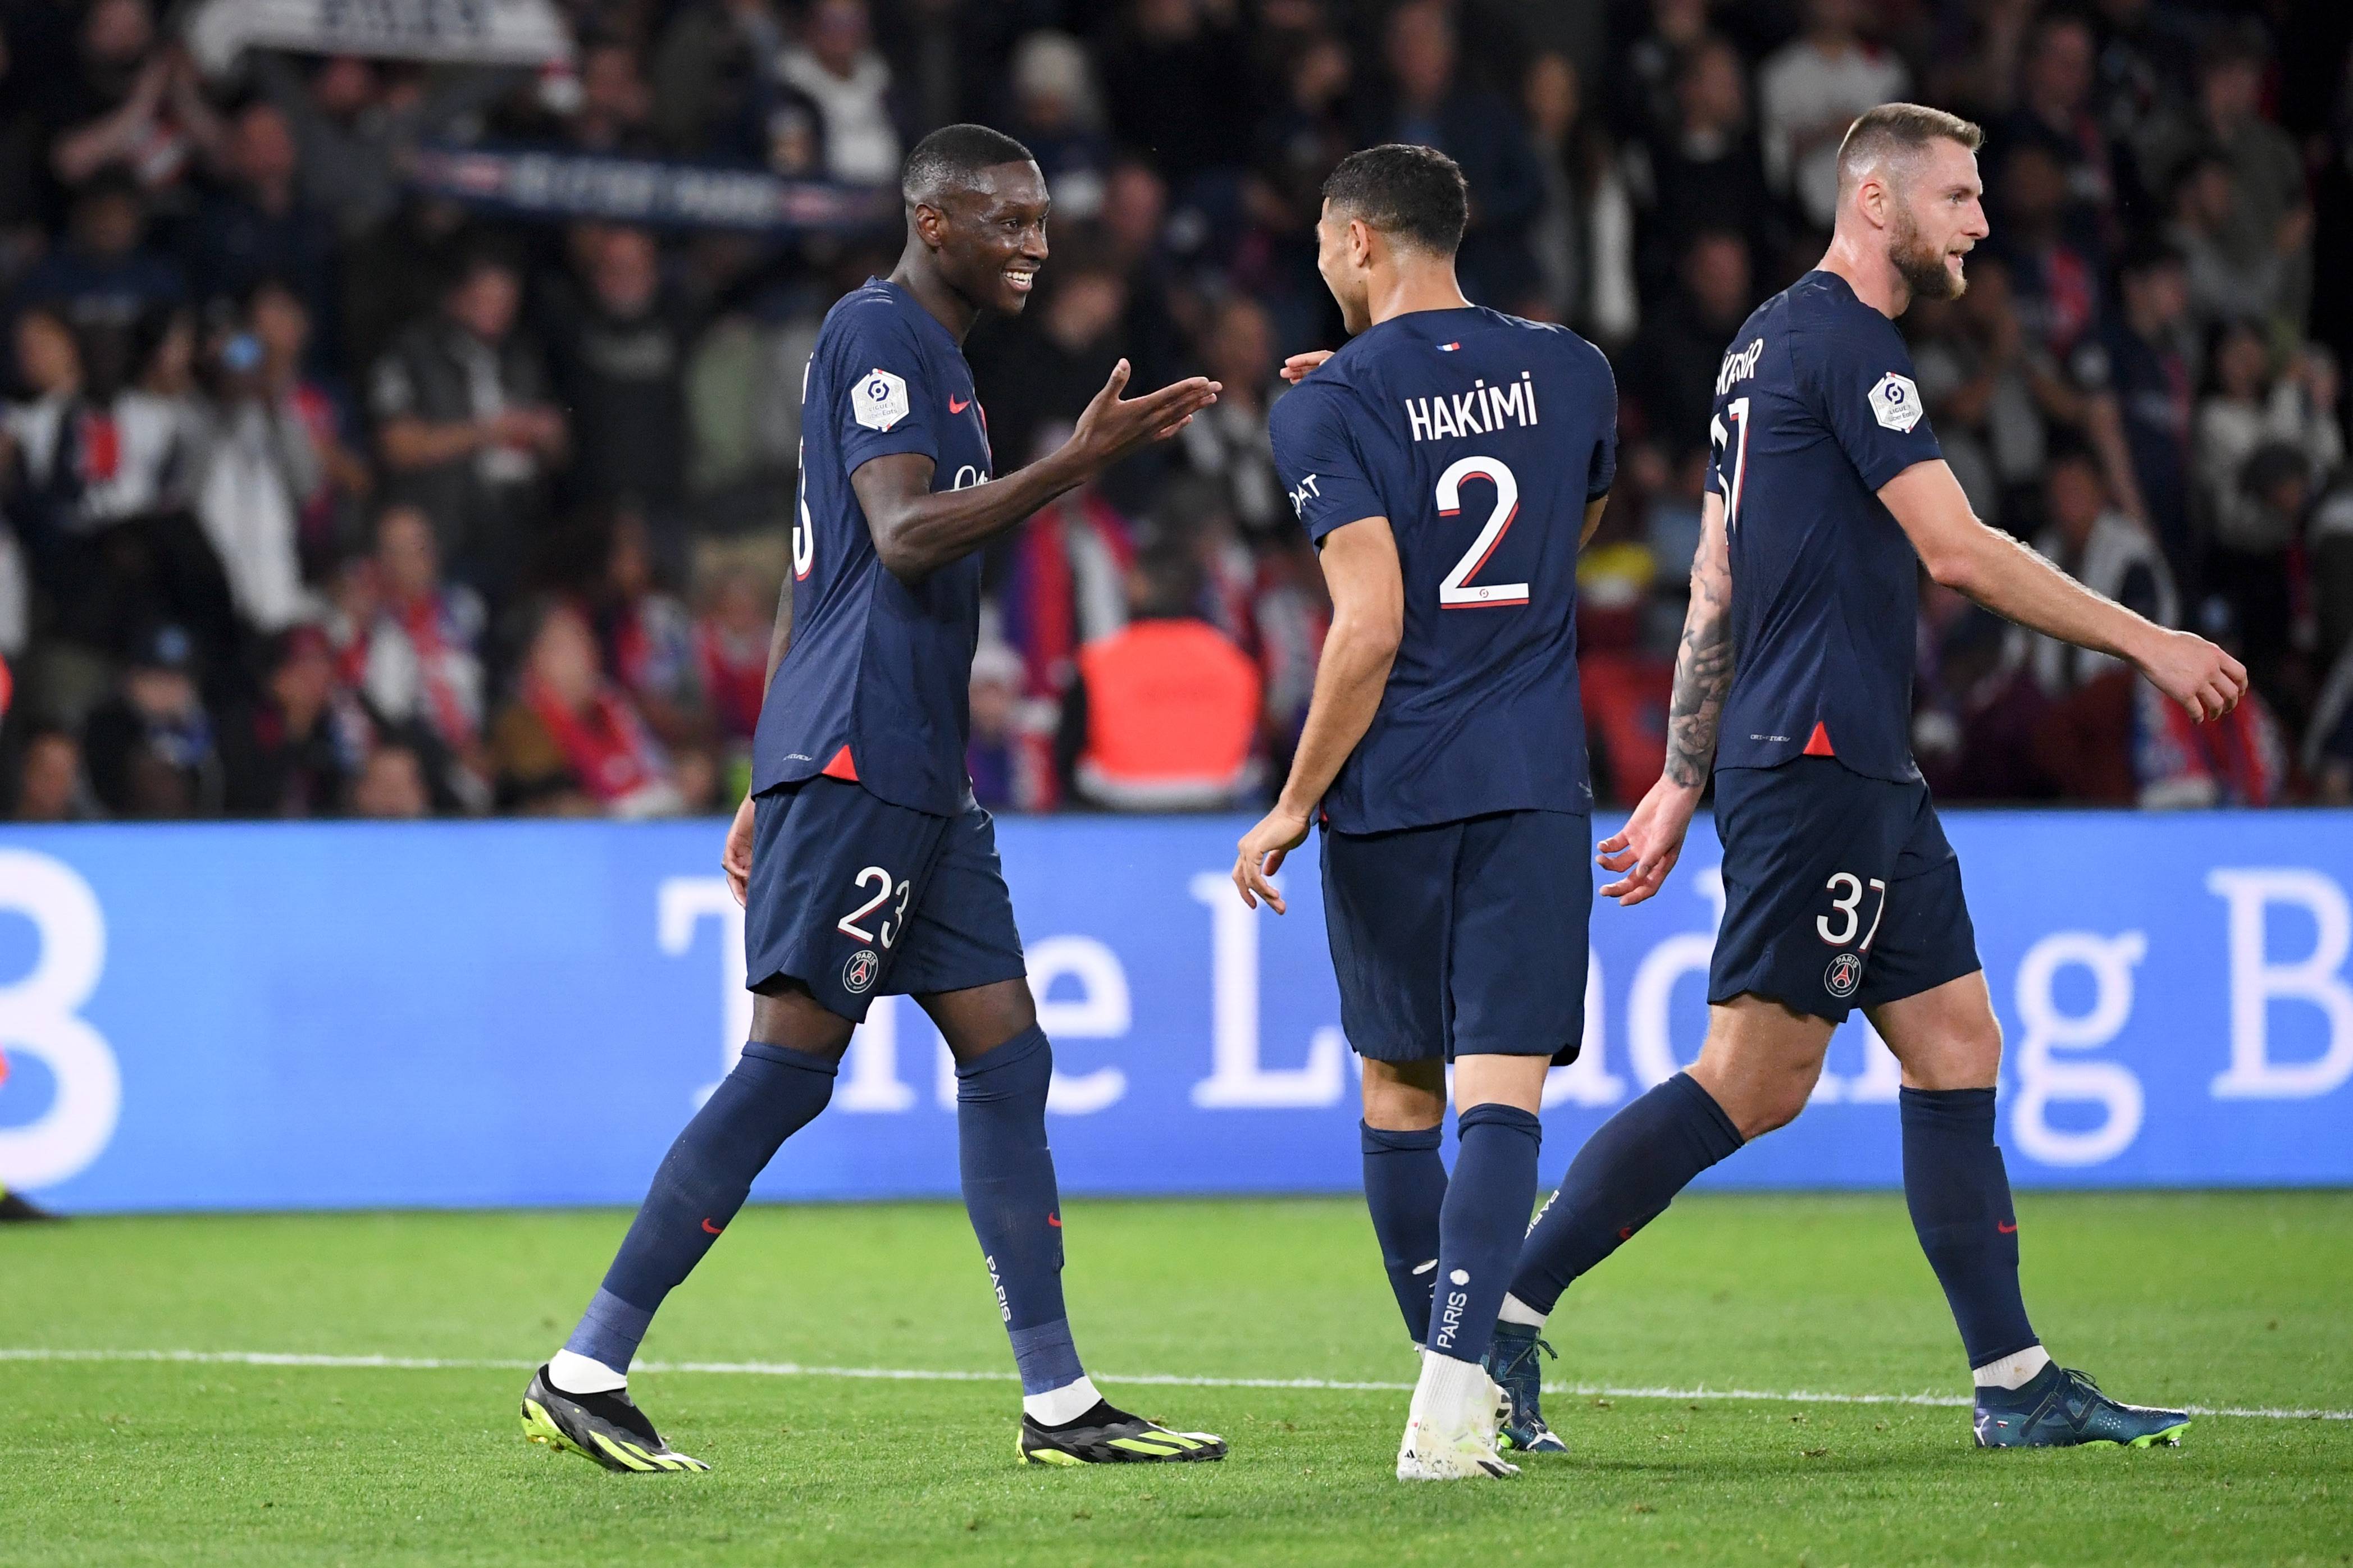 四名巴黎圣日耳曼球员因侮辱对手被停赛一场 巴黎圣日耳曼队的看台已被清空 球队不会上诉 